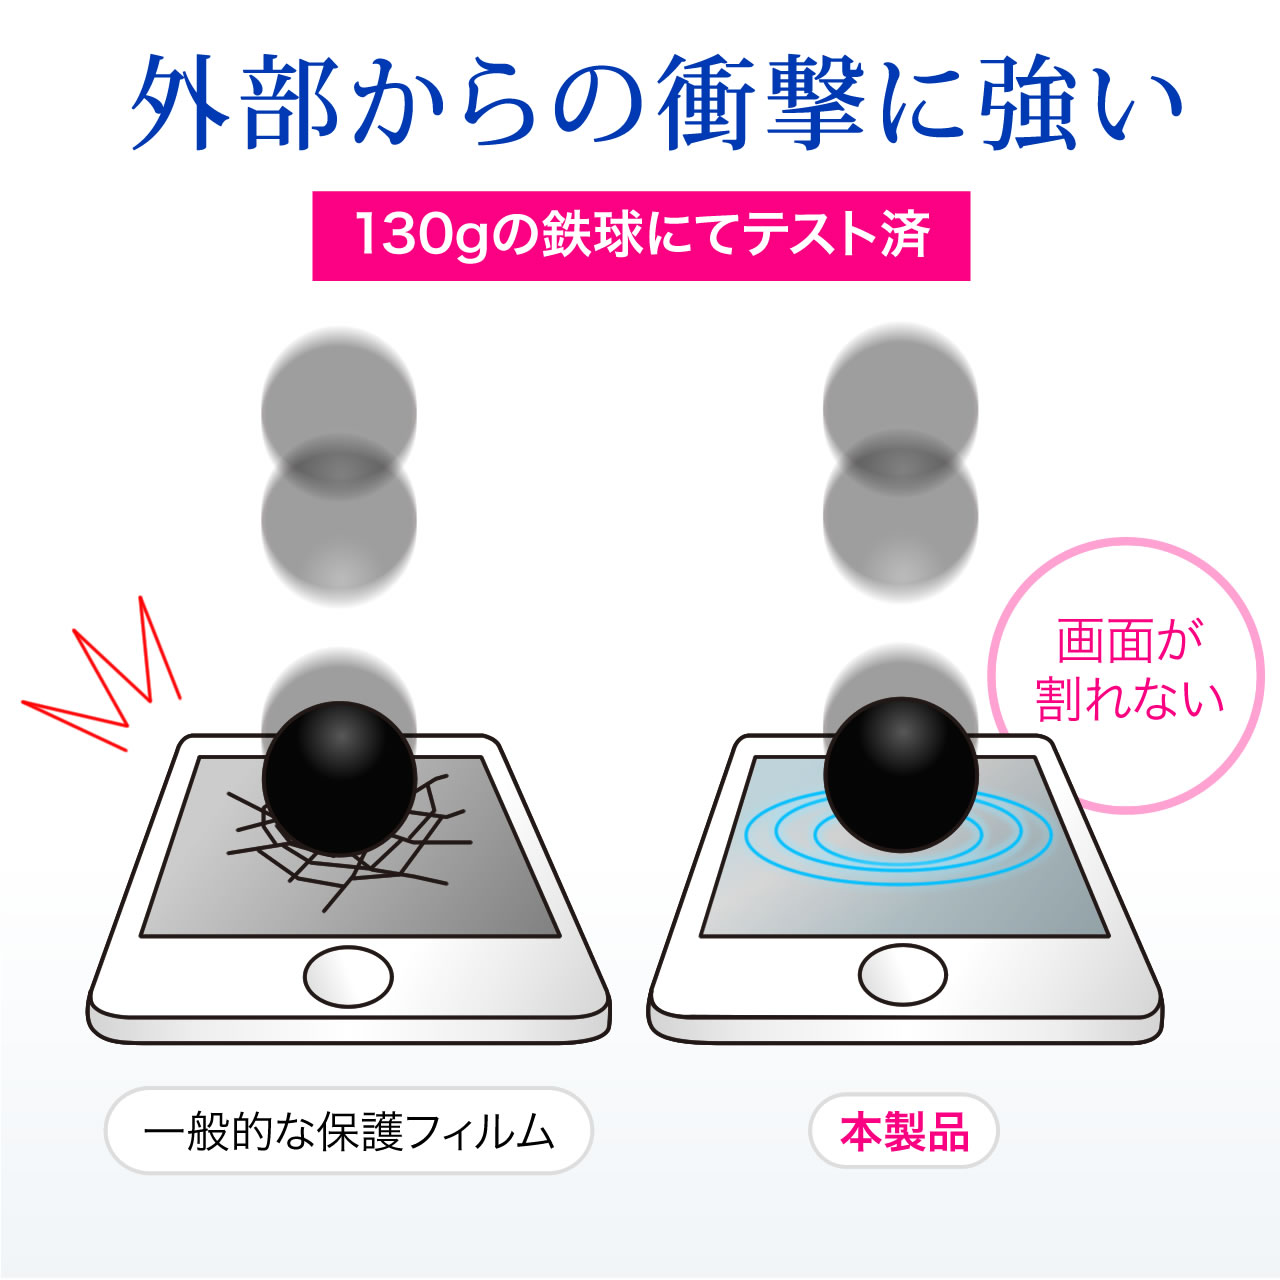 iPhone 8/7衝撃吸収ブルーライトカットフィルム（硬度3H・抗菌・反射